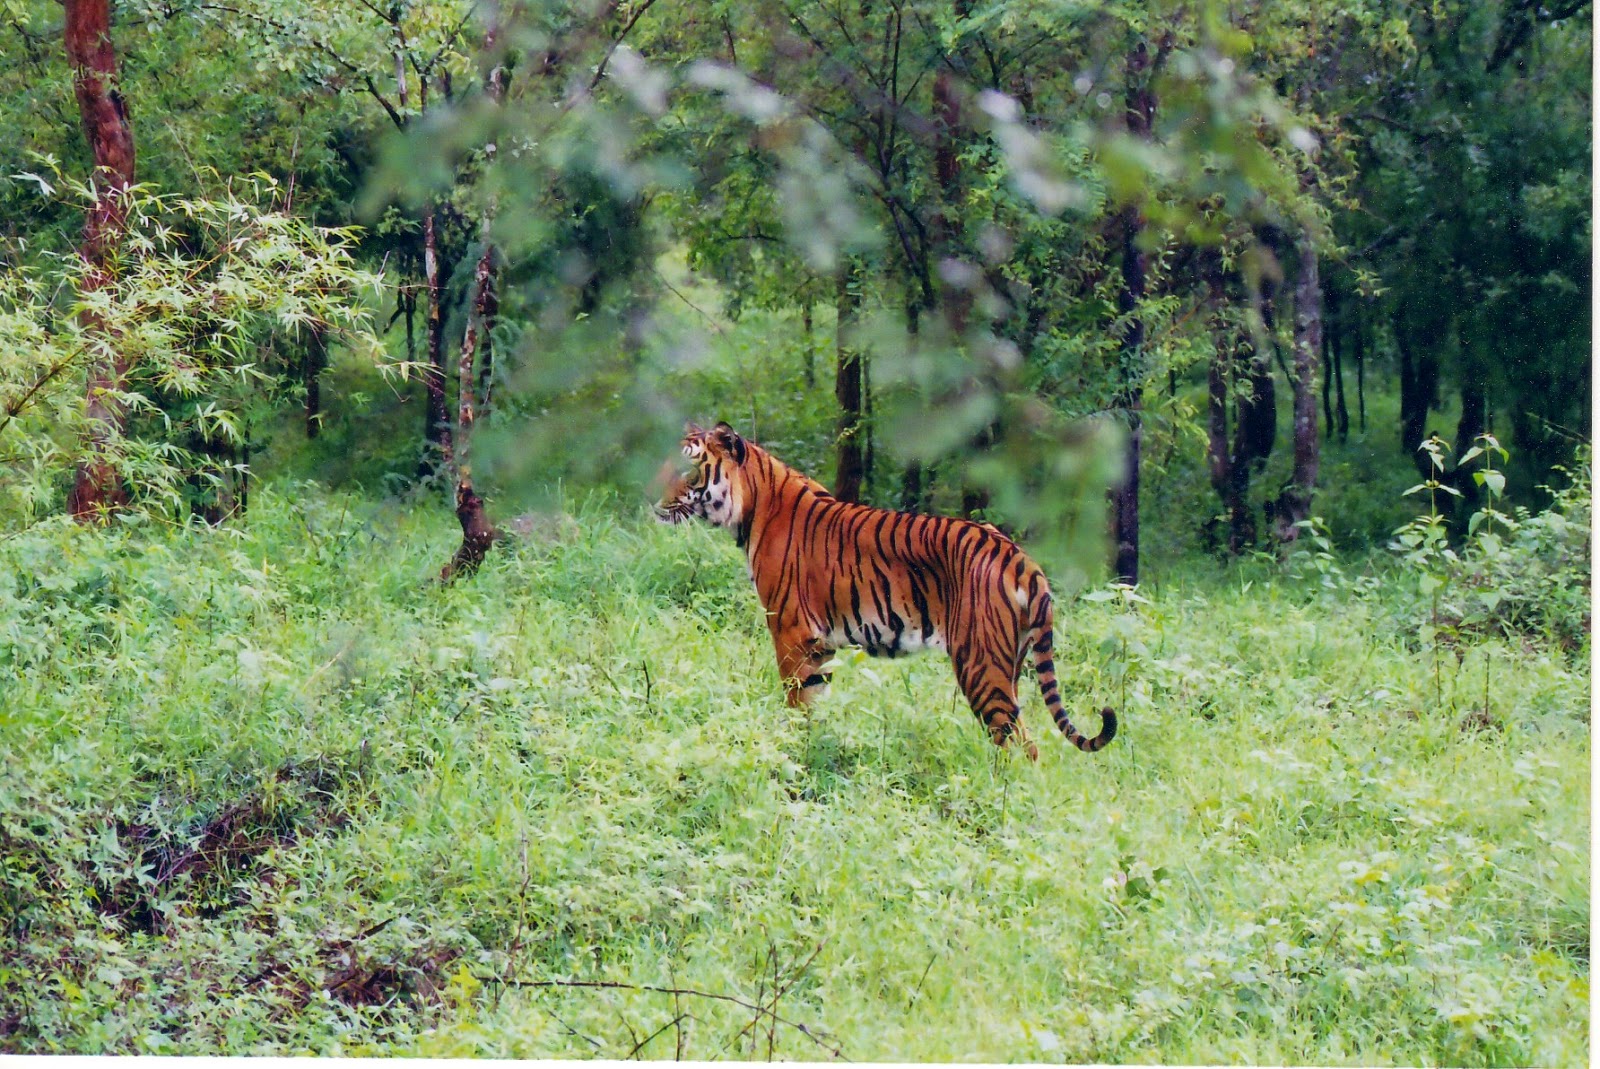 http://3.bp.blogspot.com/-NJaFvP5Cxs8/VMnYZgPQJjI/AAAAAAAAKR8/uFqsGPIhHqw/s1600/Indian_Tiger_at_Bhadra_wildlife_sanctuary.jpg